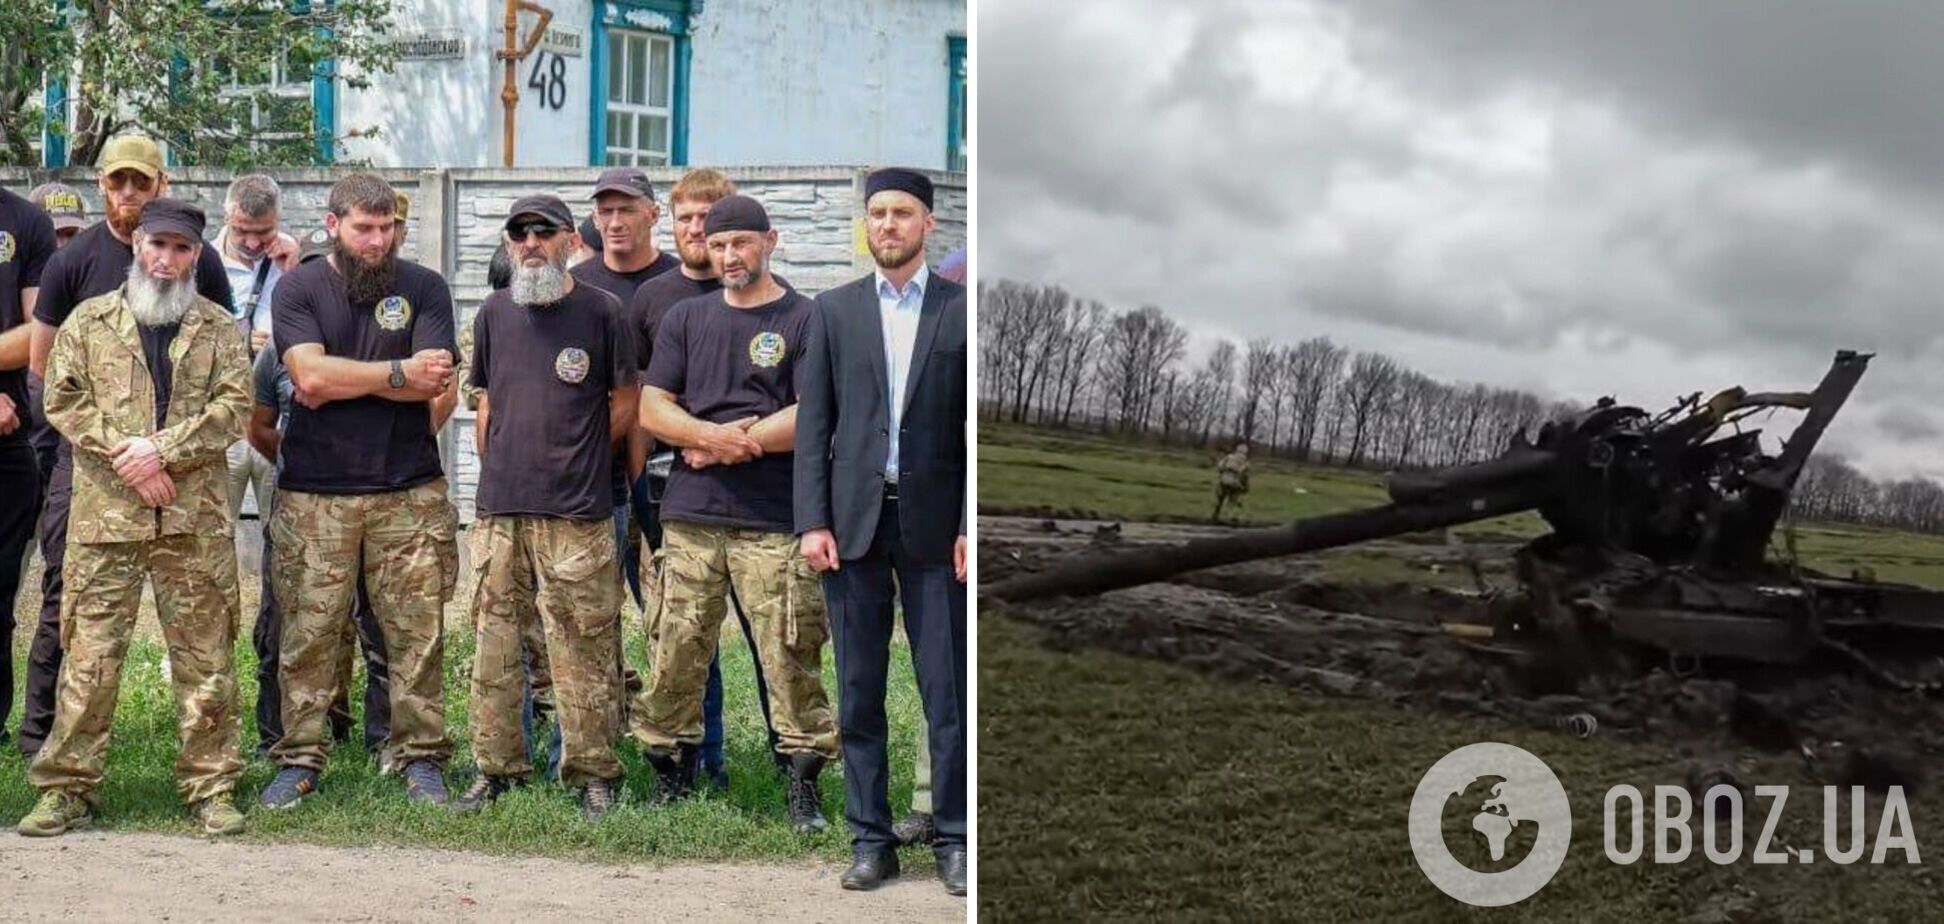 Защитники Украины из батальона имени Шейха Мансура показали, как уничтожают российских оккупантов. Видео